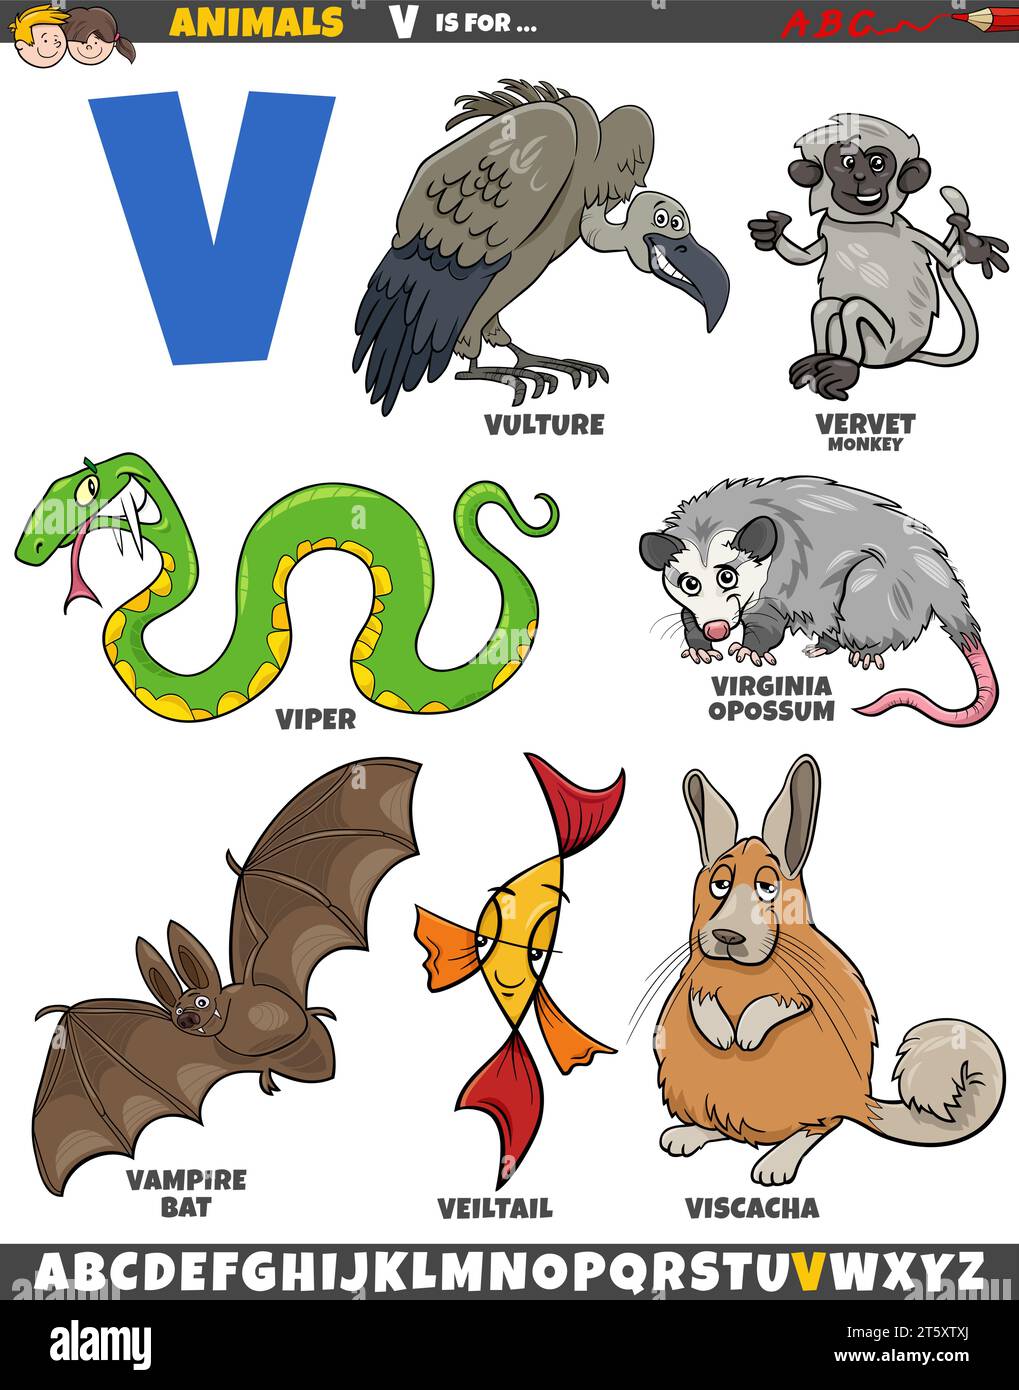 Zeichentrickillustration von Tierfiguren, die für den Buchstaben V gesetzt sind Stock Vektor